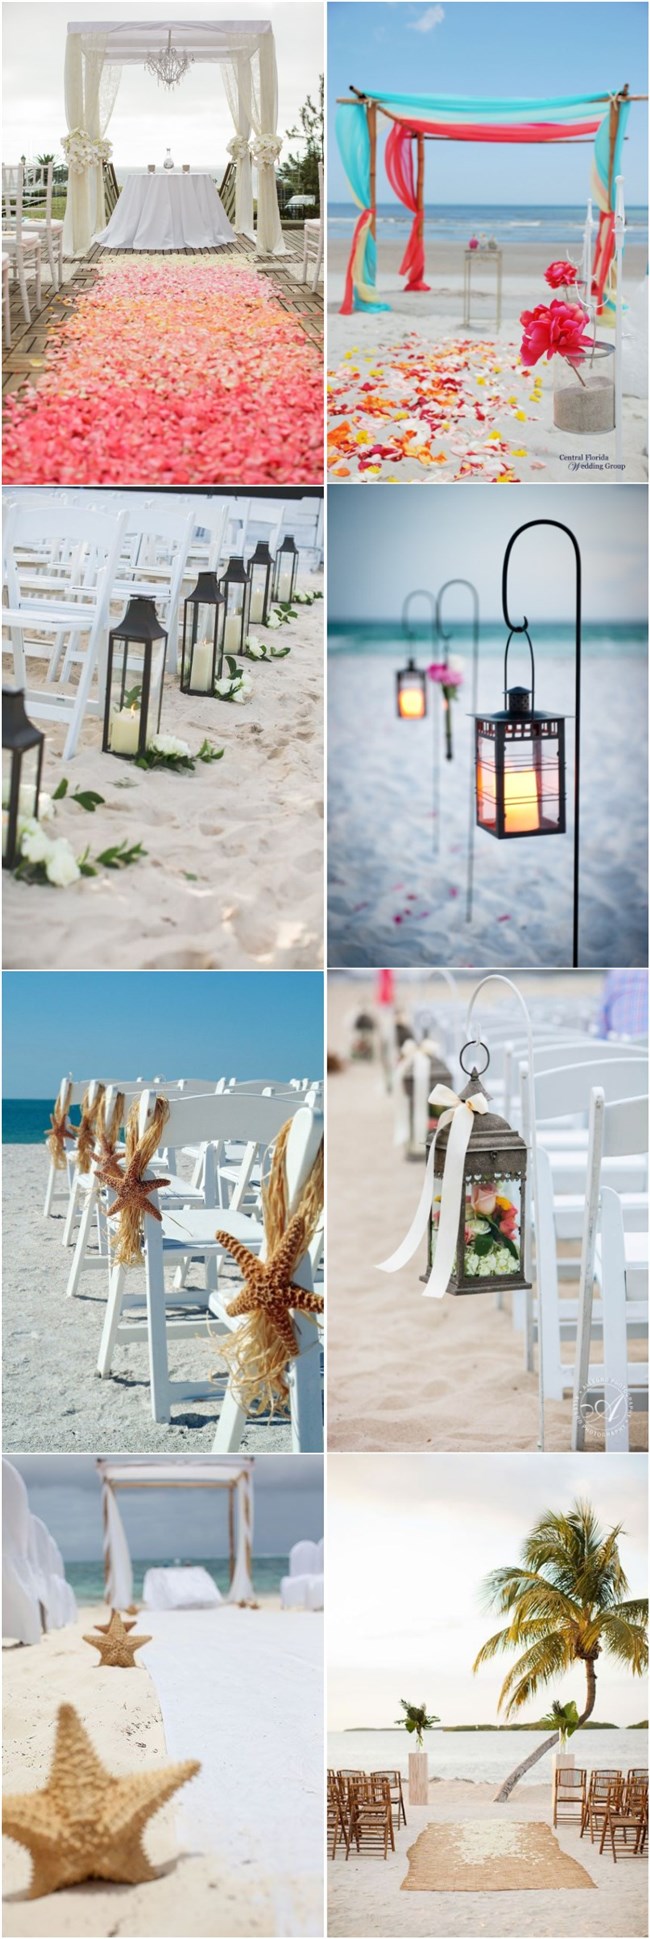 beach wedding decor ideas-beach wedding aisles